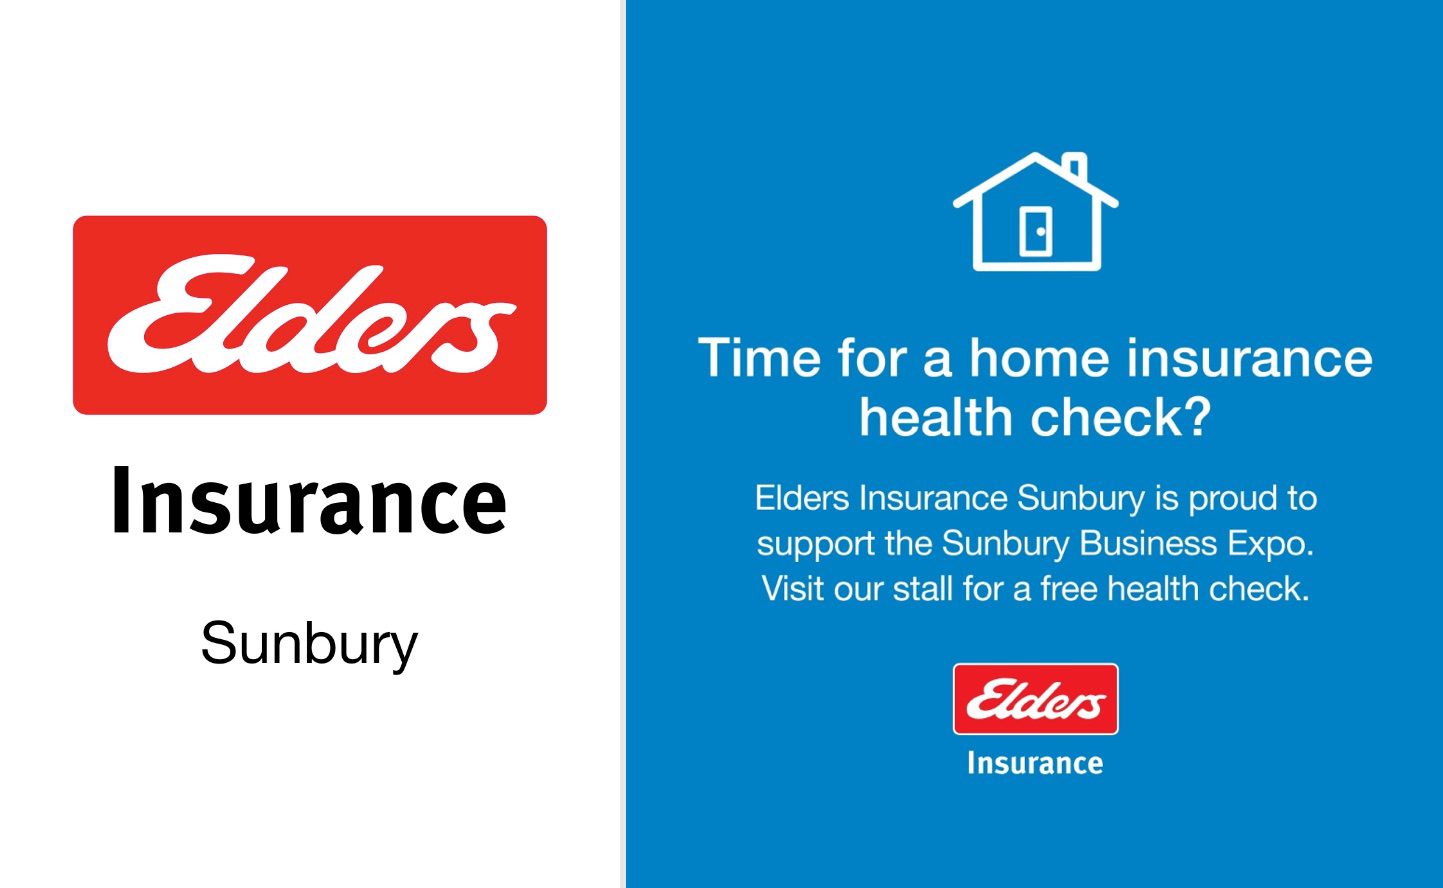 Elders Insurance Sunbury